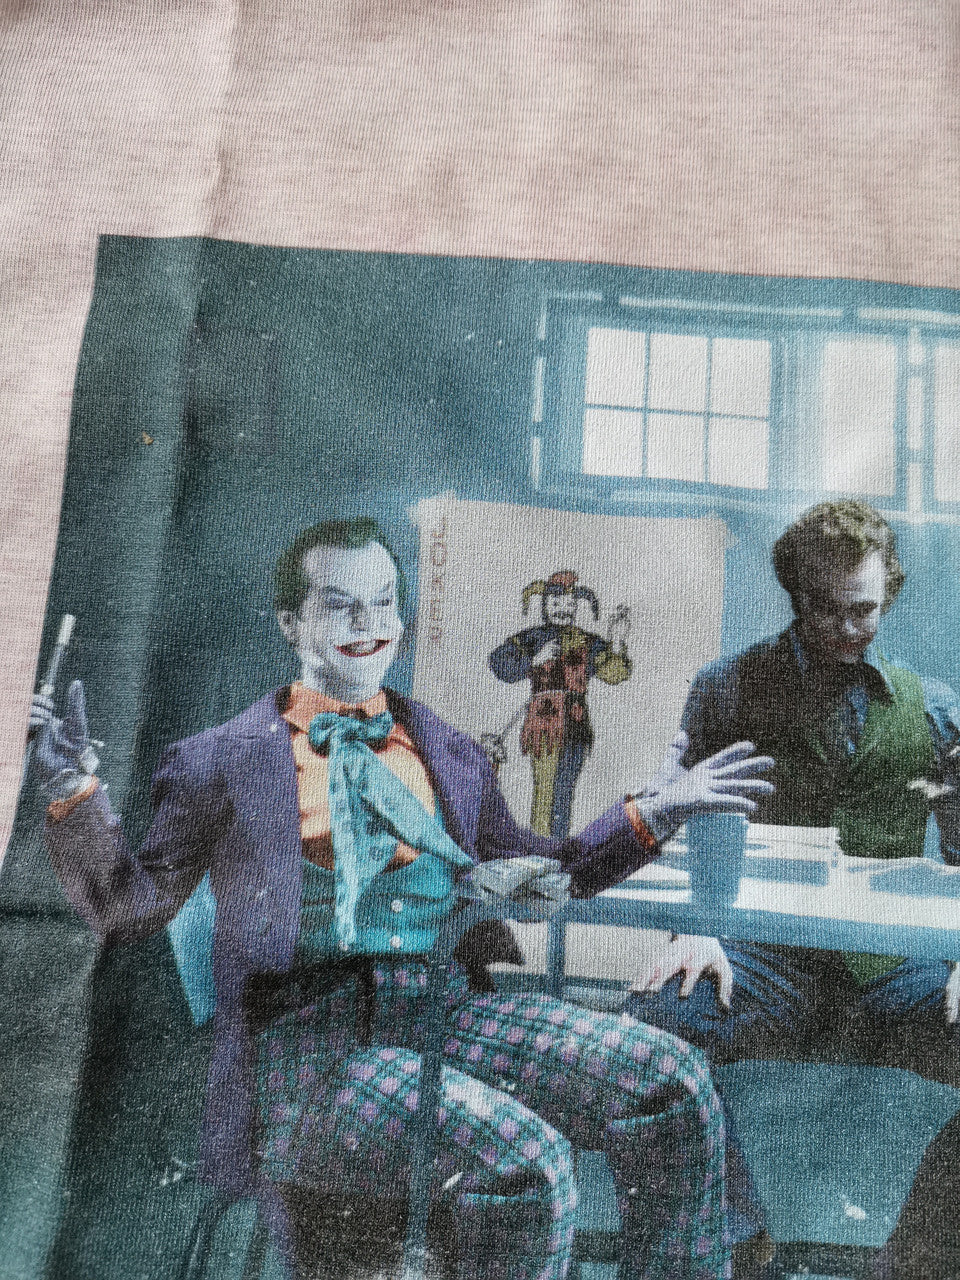 NEW: 4 Jokers Meeting KiSS T-Shirt - Heath Ledger - Edit - Jack Nicholson Jared Leto Joaquin Pheonix Dark Knight - Present - Joker